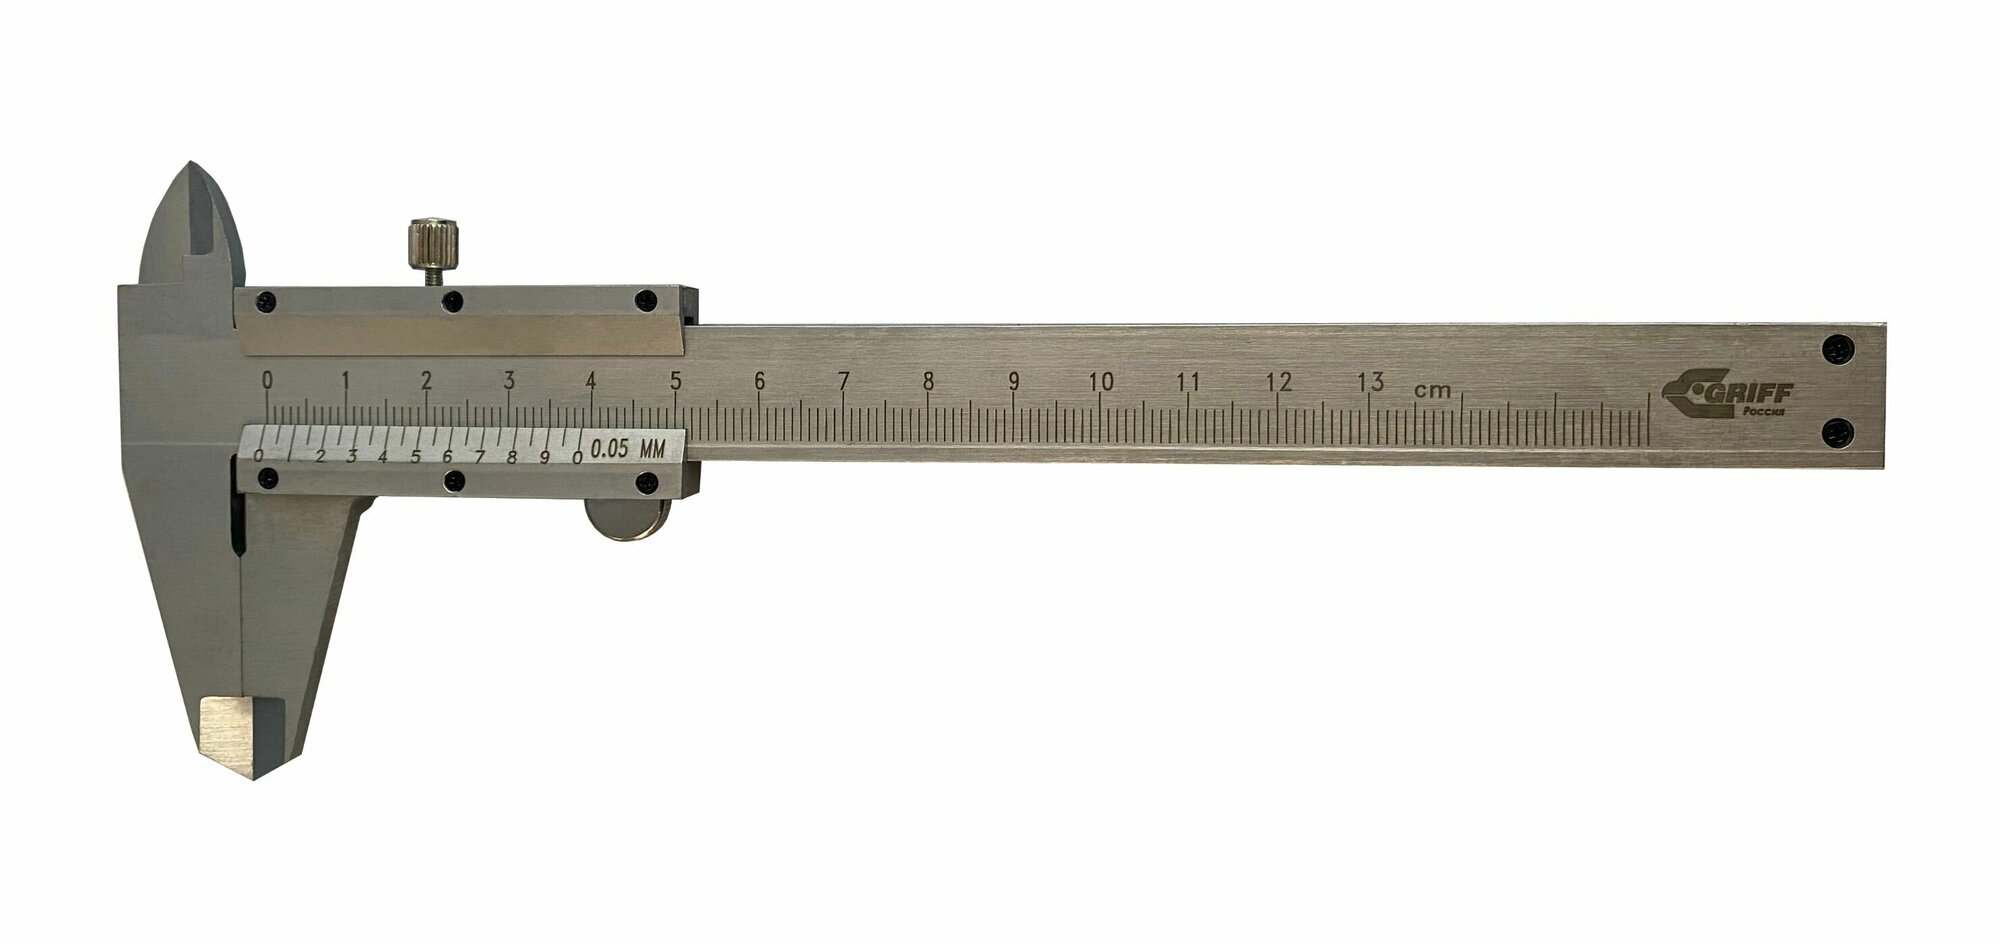 Штангенциркуль нониусный ШЦ-I 125-0,05, GRIFF, ГОСТ 166-89, серия standard, D162031